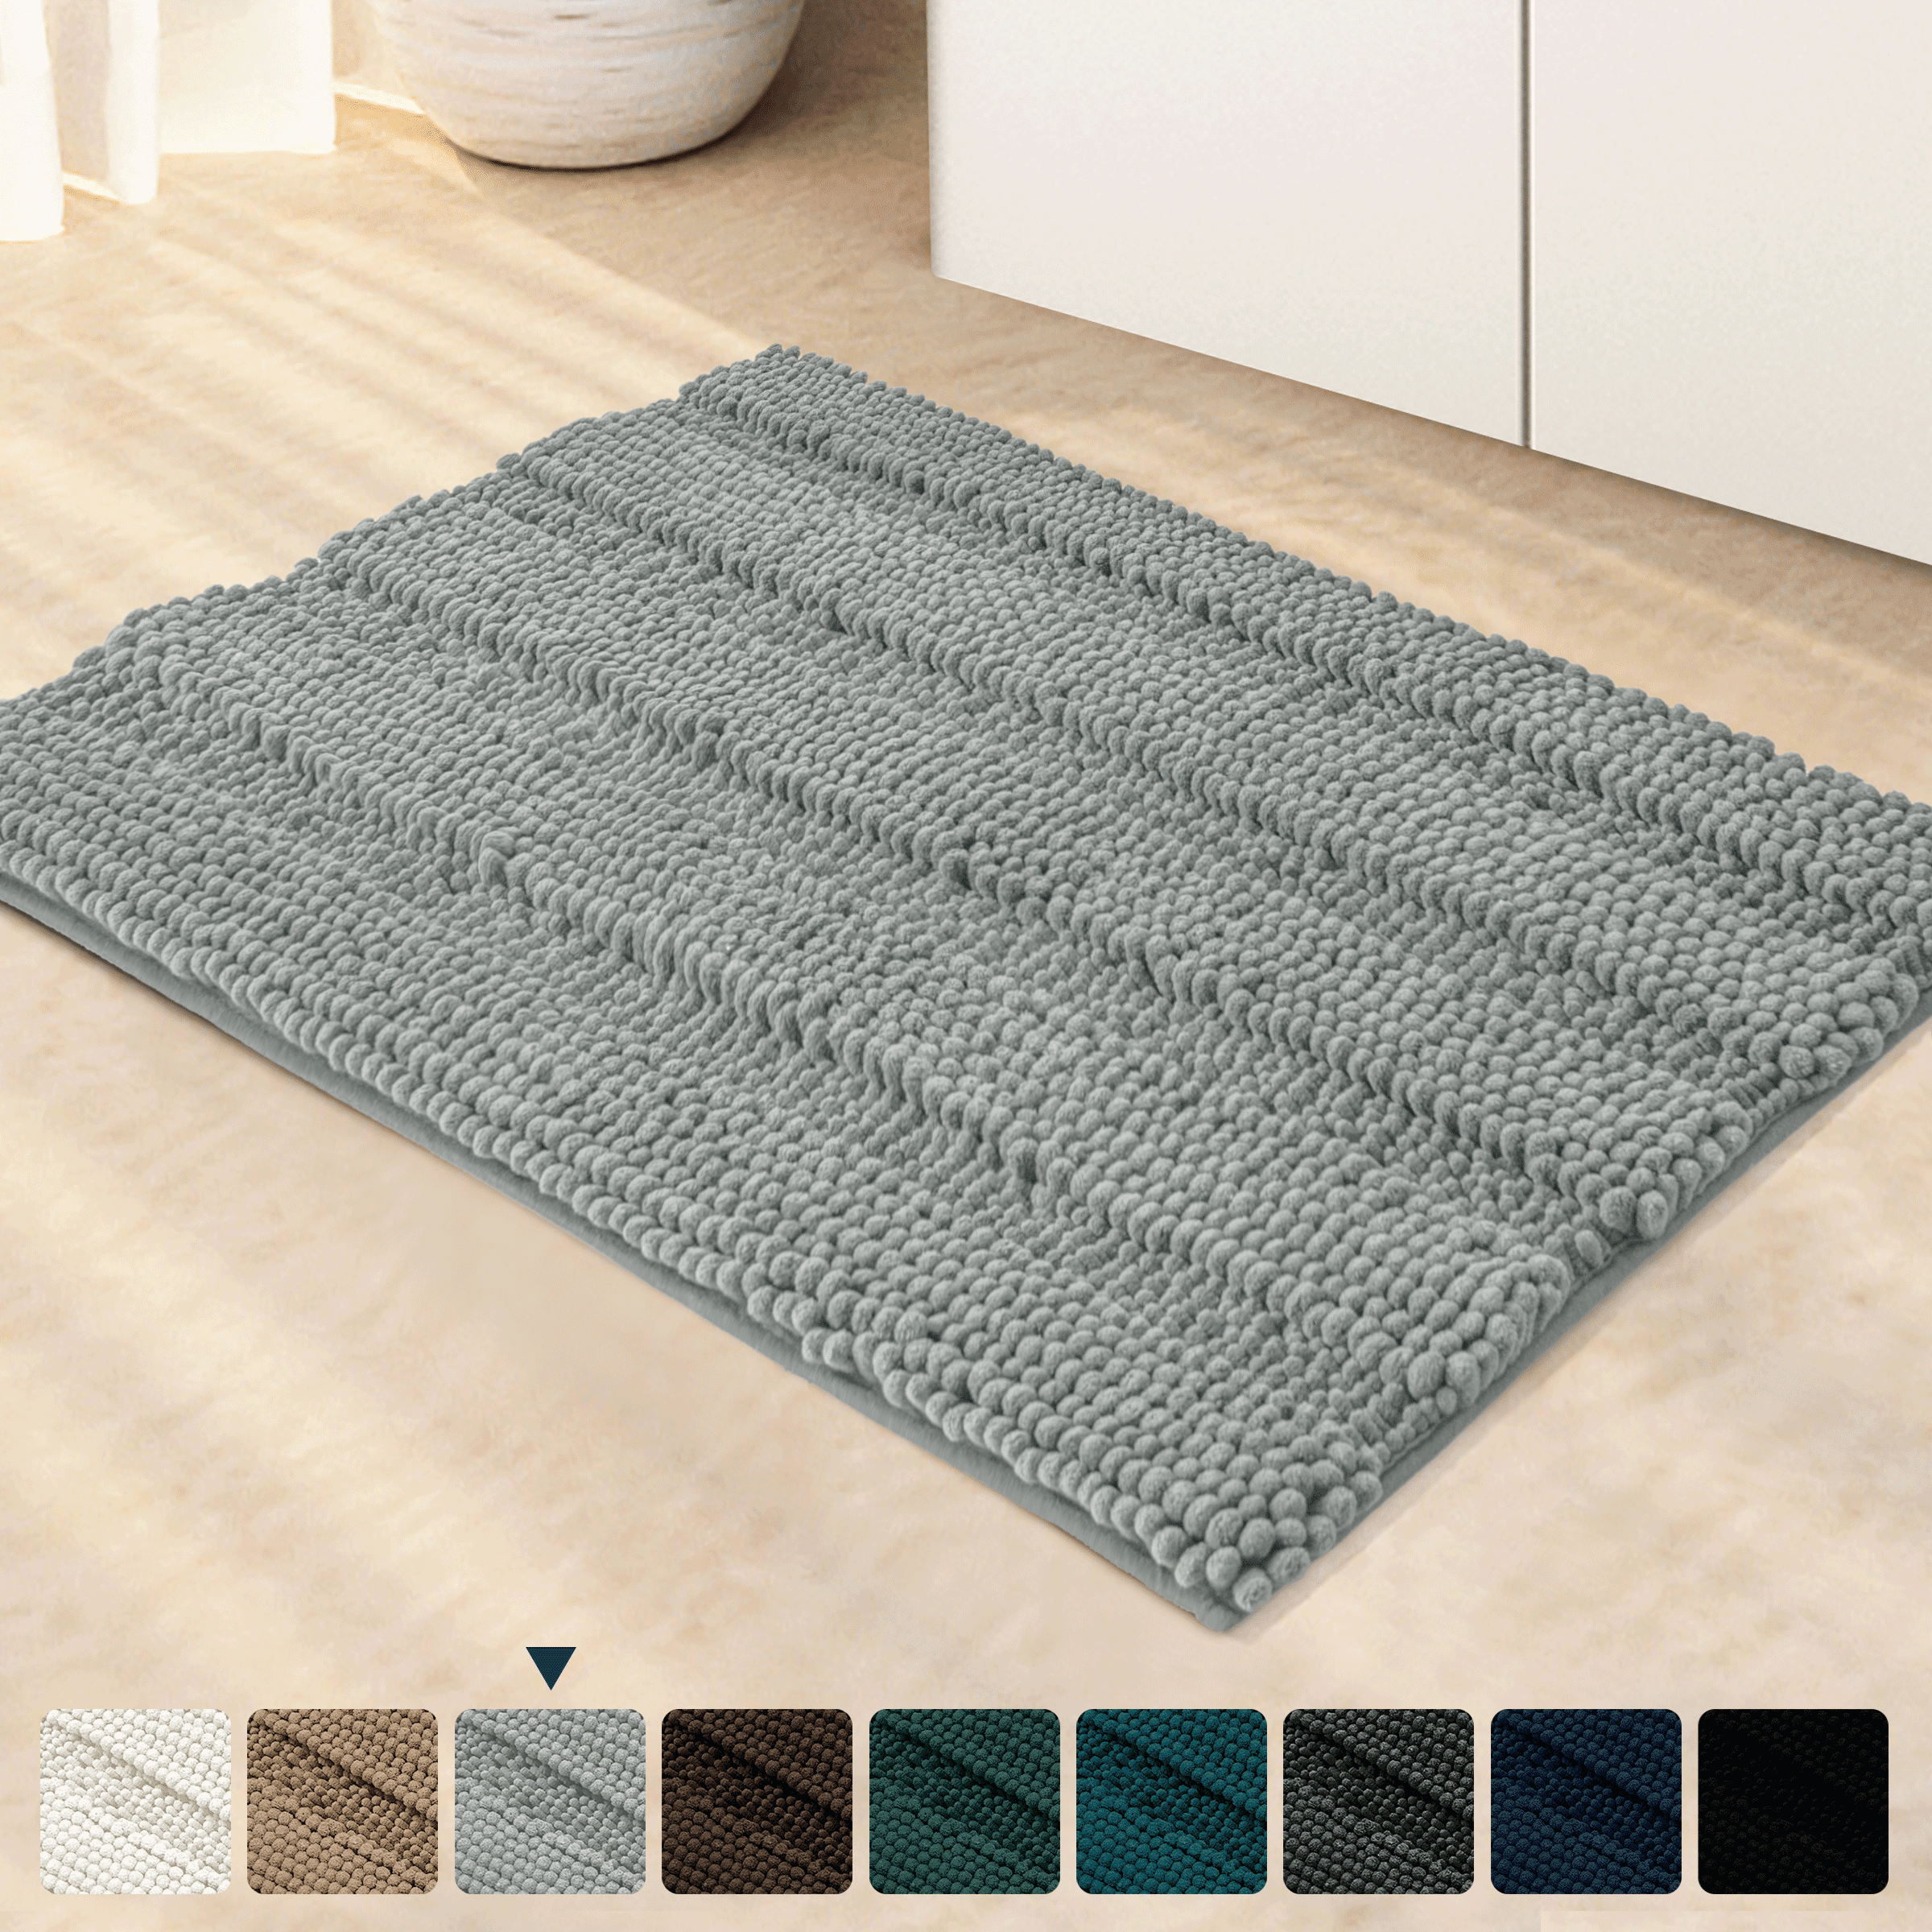 15X23" Kitchen Bathroom Floor Non-Slip Bath Mat Rug Carpet Scrap Wood Stitching 